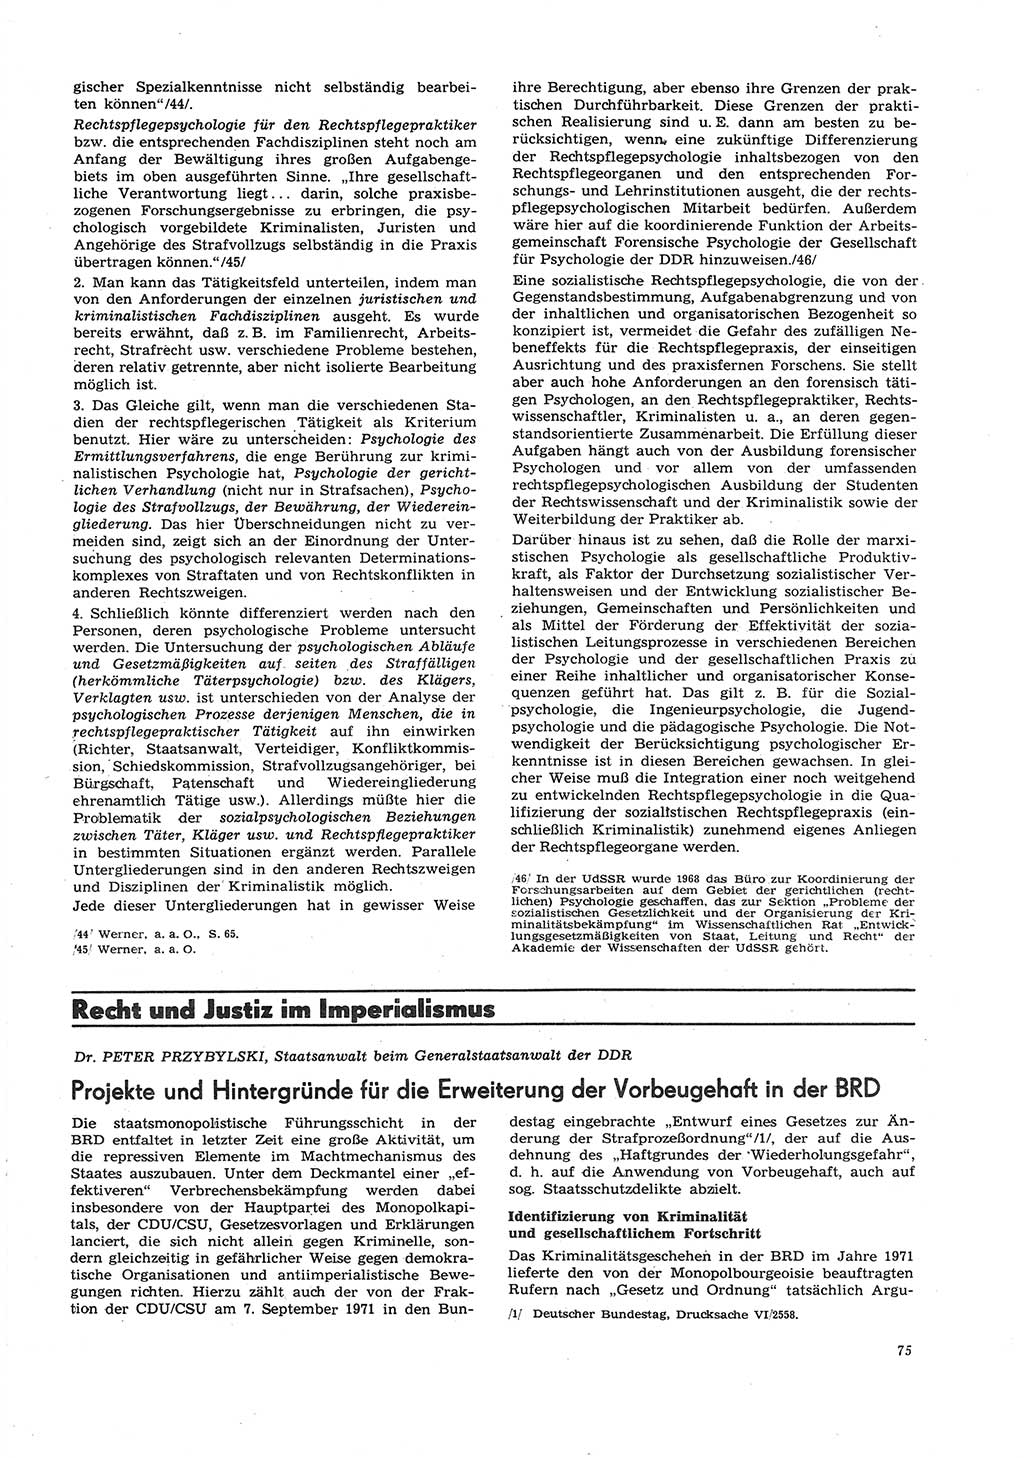 Neue Justiz (NJ), Zeitschrift für Recht und Rechtswissenschaft [Deutsche Demokratische Republik (DDR)], 26. Jahrgang 1972, Seite 75 (NJ DDR 1972, S. 75)